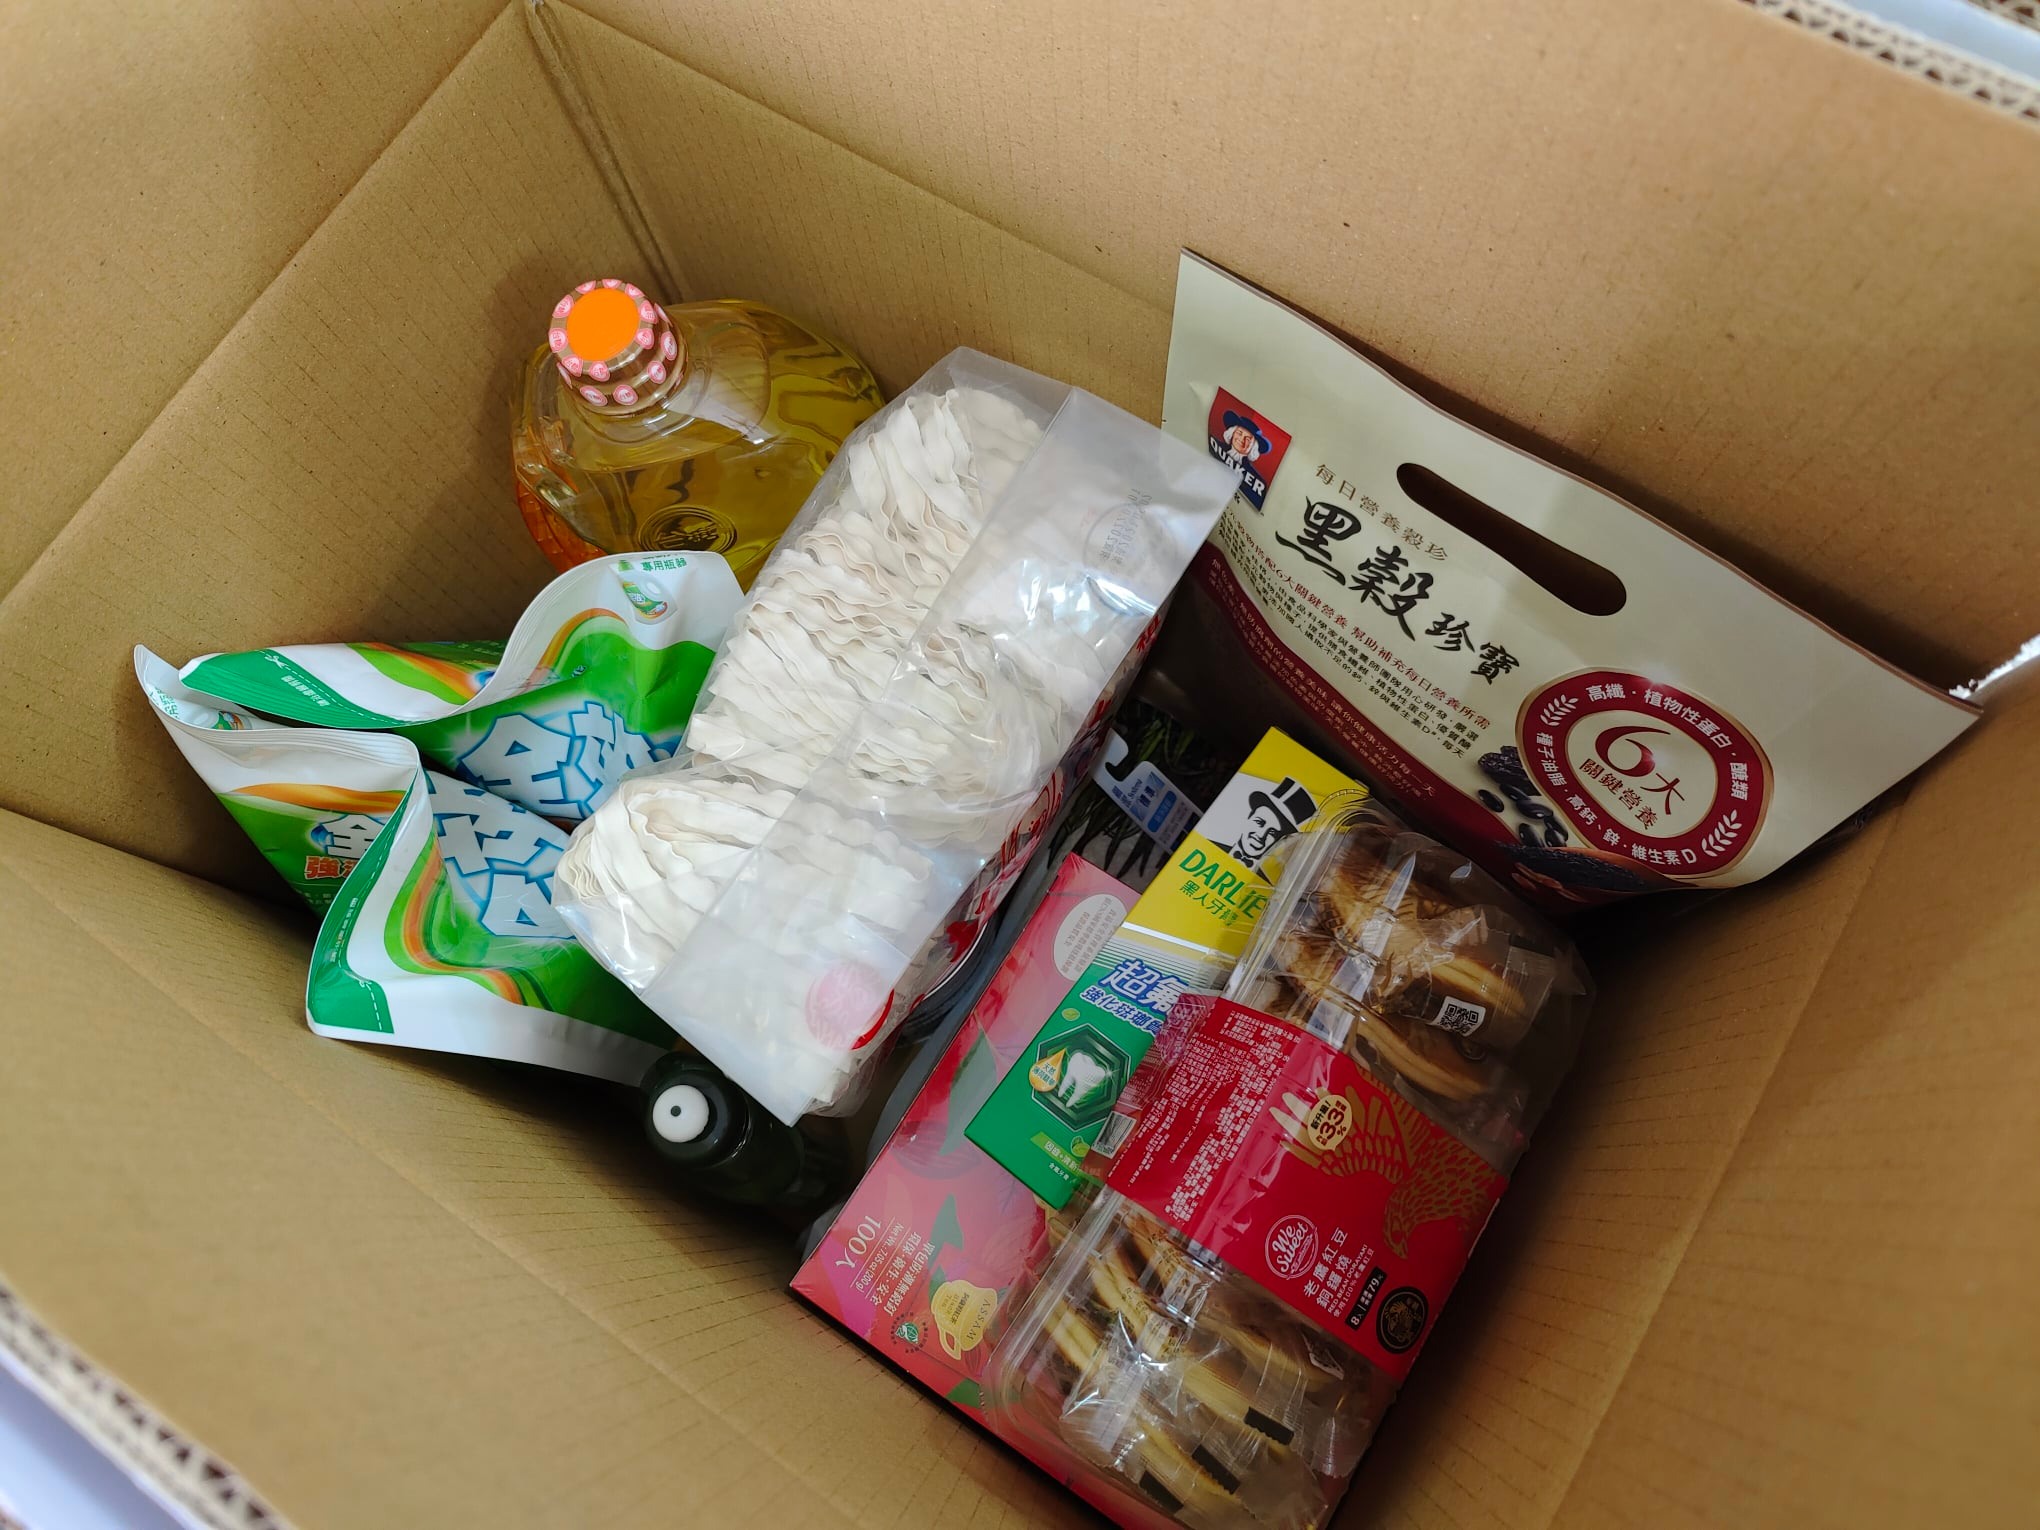 寒冬送暖，捐贈物資給水璉村弱勢及獨居長者，有能力就應該多幫助一些人-東台灣旅遊美食協會